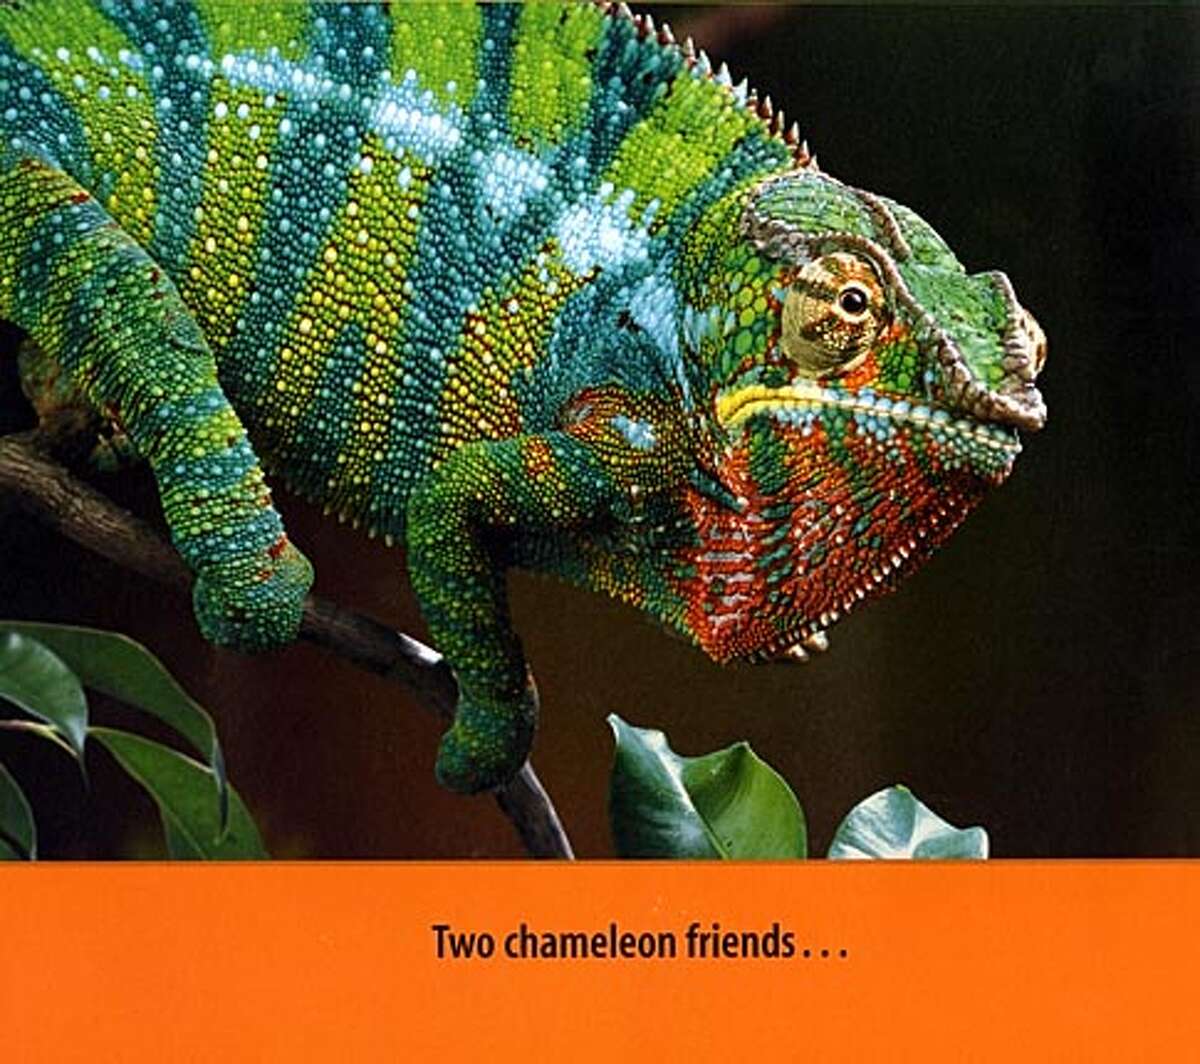 From Chameleon, Chameleon BookReview#BookReview#Chronicle#06-26-2005#ALL#2star#e6#0423032655